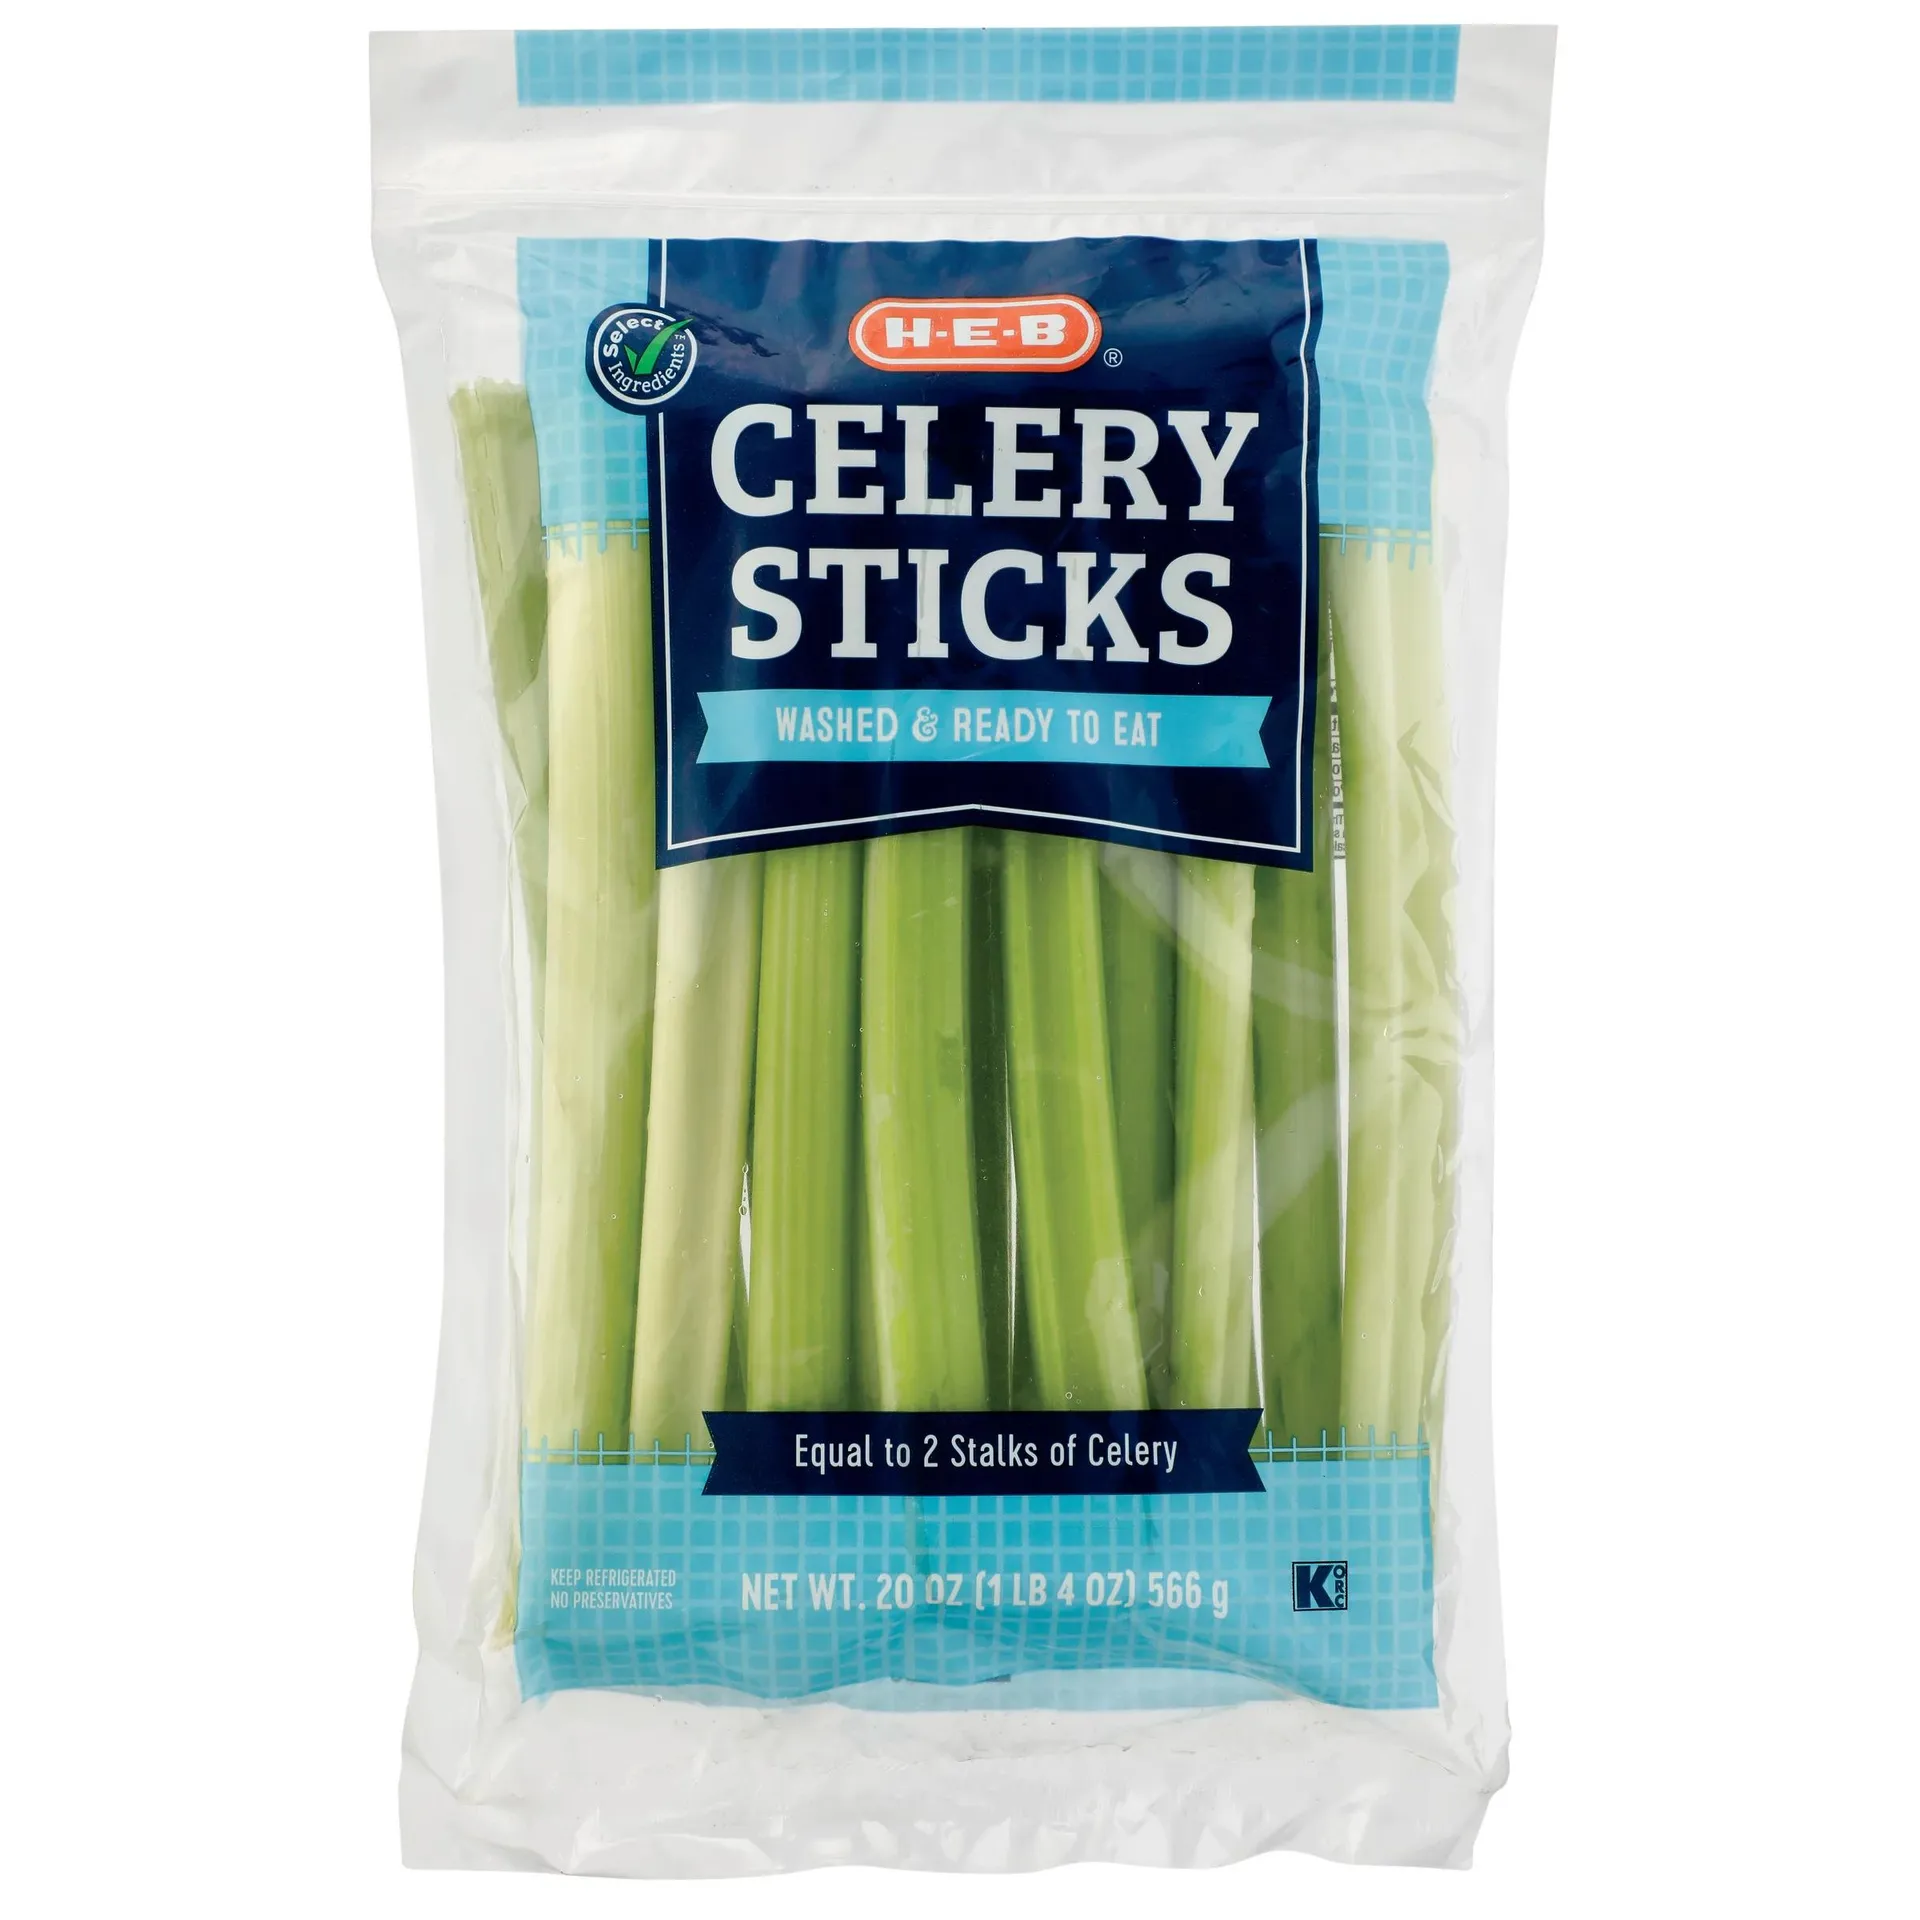 H‑E‑B Fresh Celery Sticks